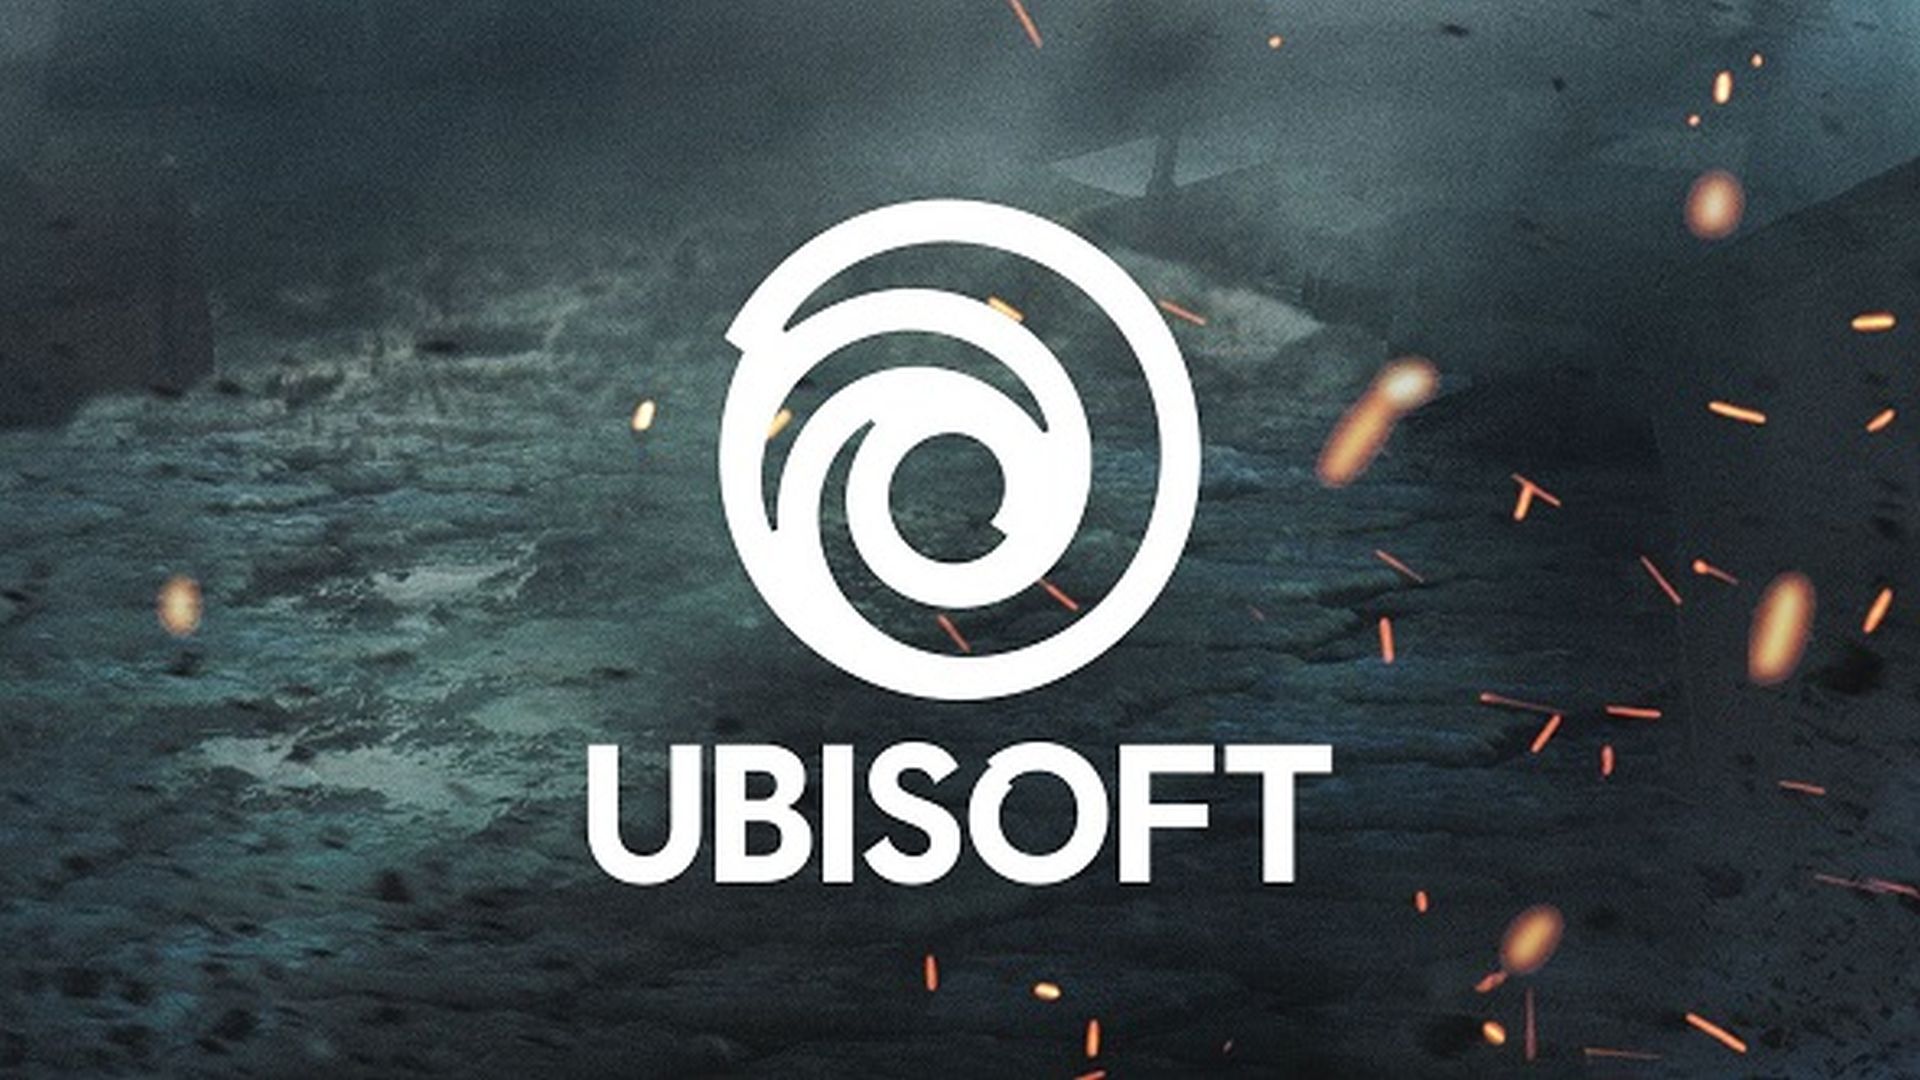 500 Ubisoft कर्मचारीहरू भेदभाव र दुर्व्यवहारको विरोधमा सामेल छन्